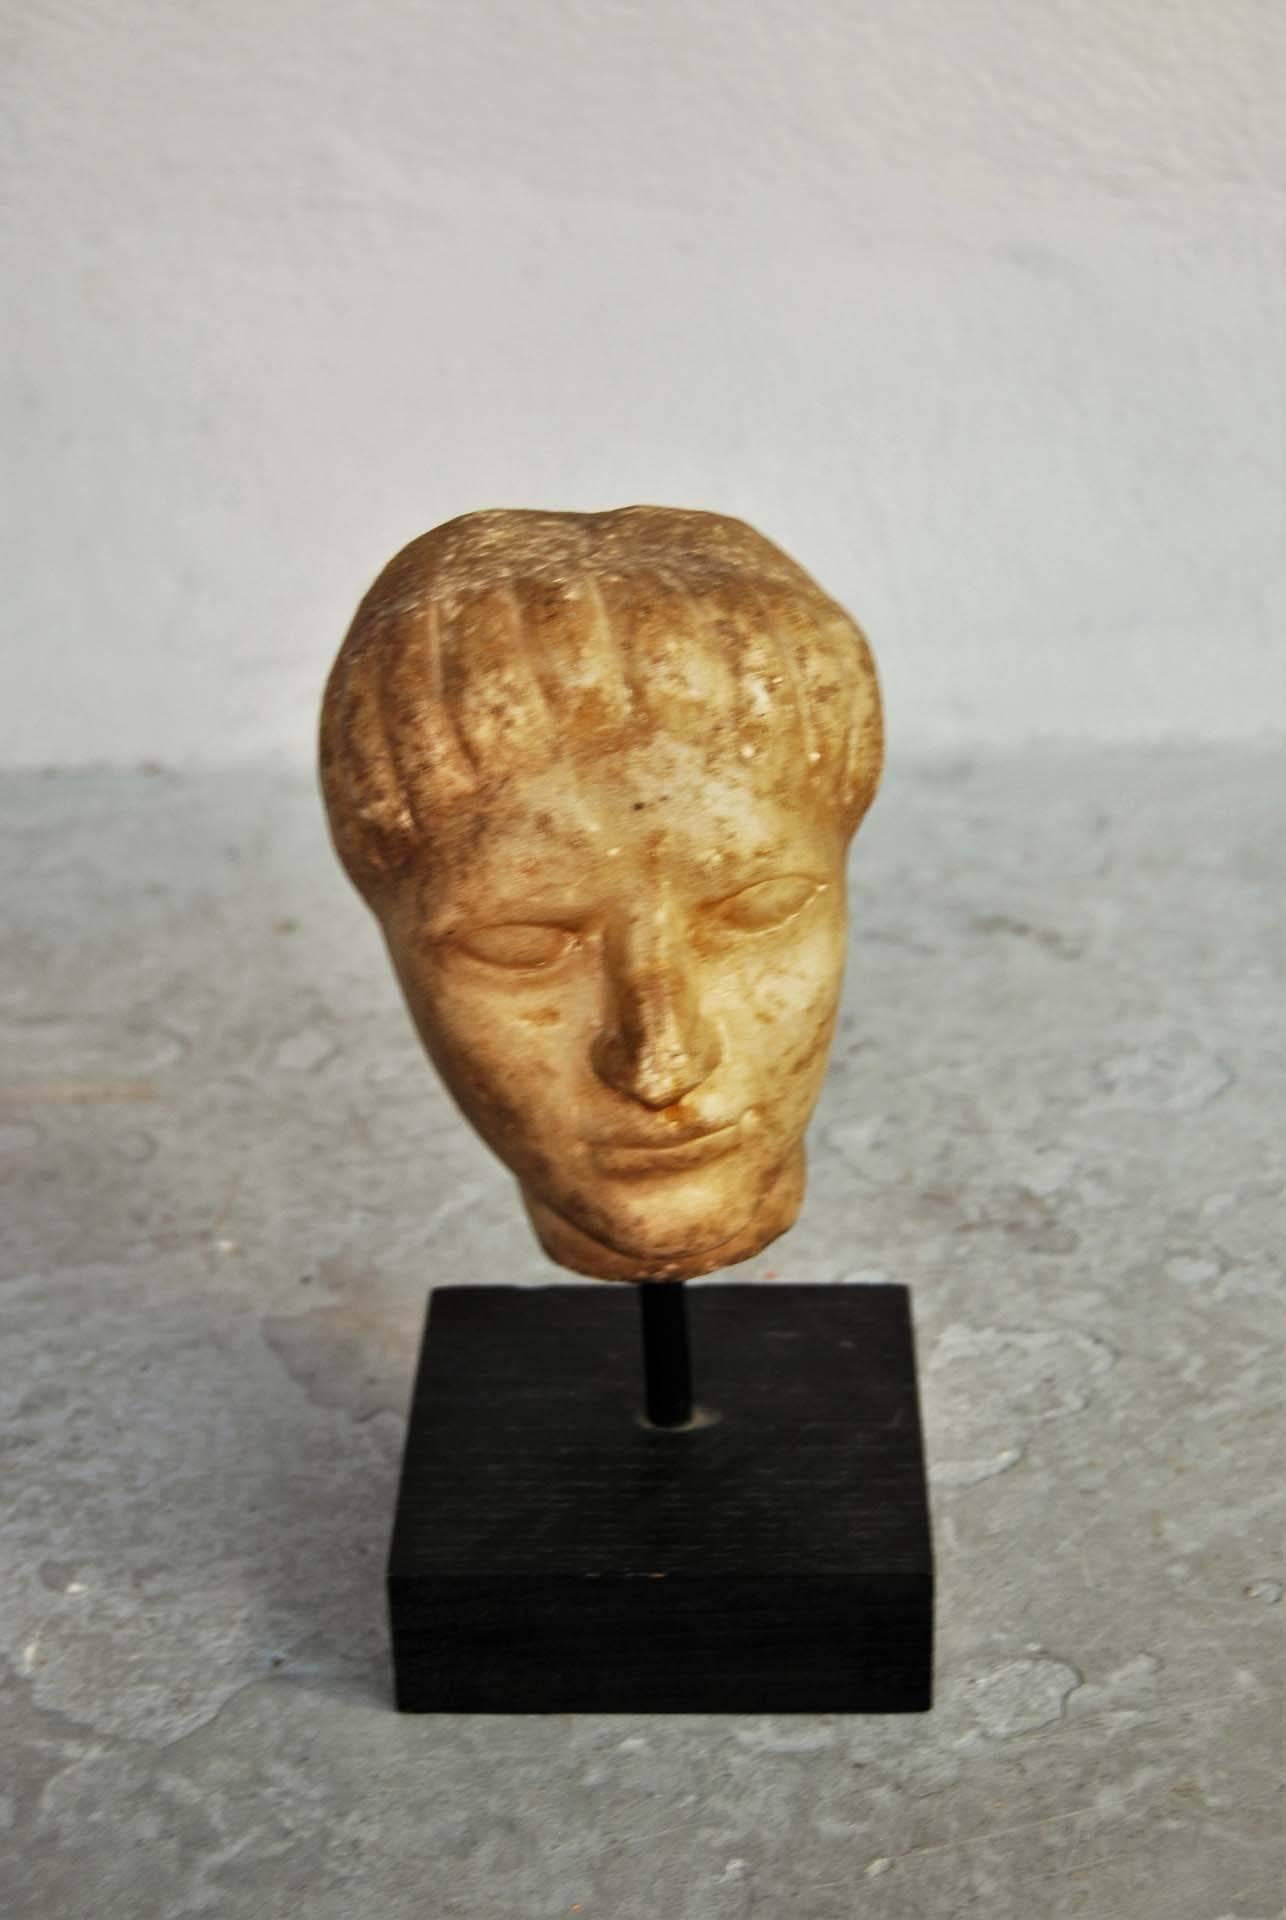 Impressive antique marble head sculpture.
Dimensions: Height 17 cm, diameter 11 cm.

  